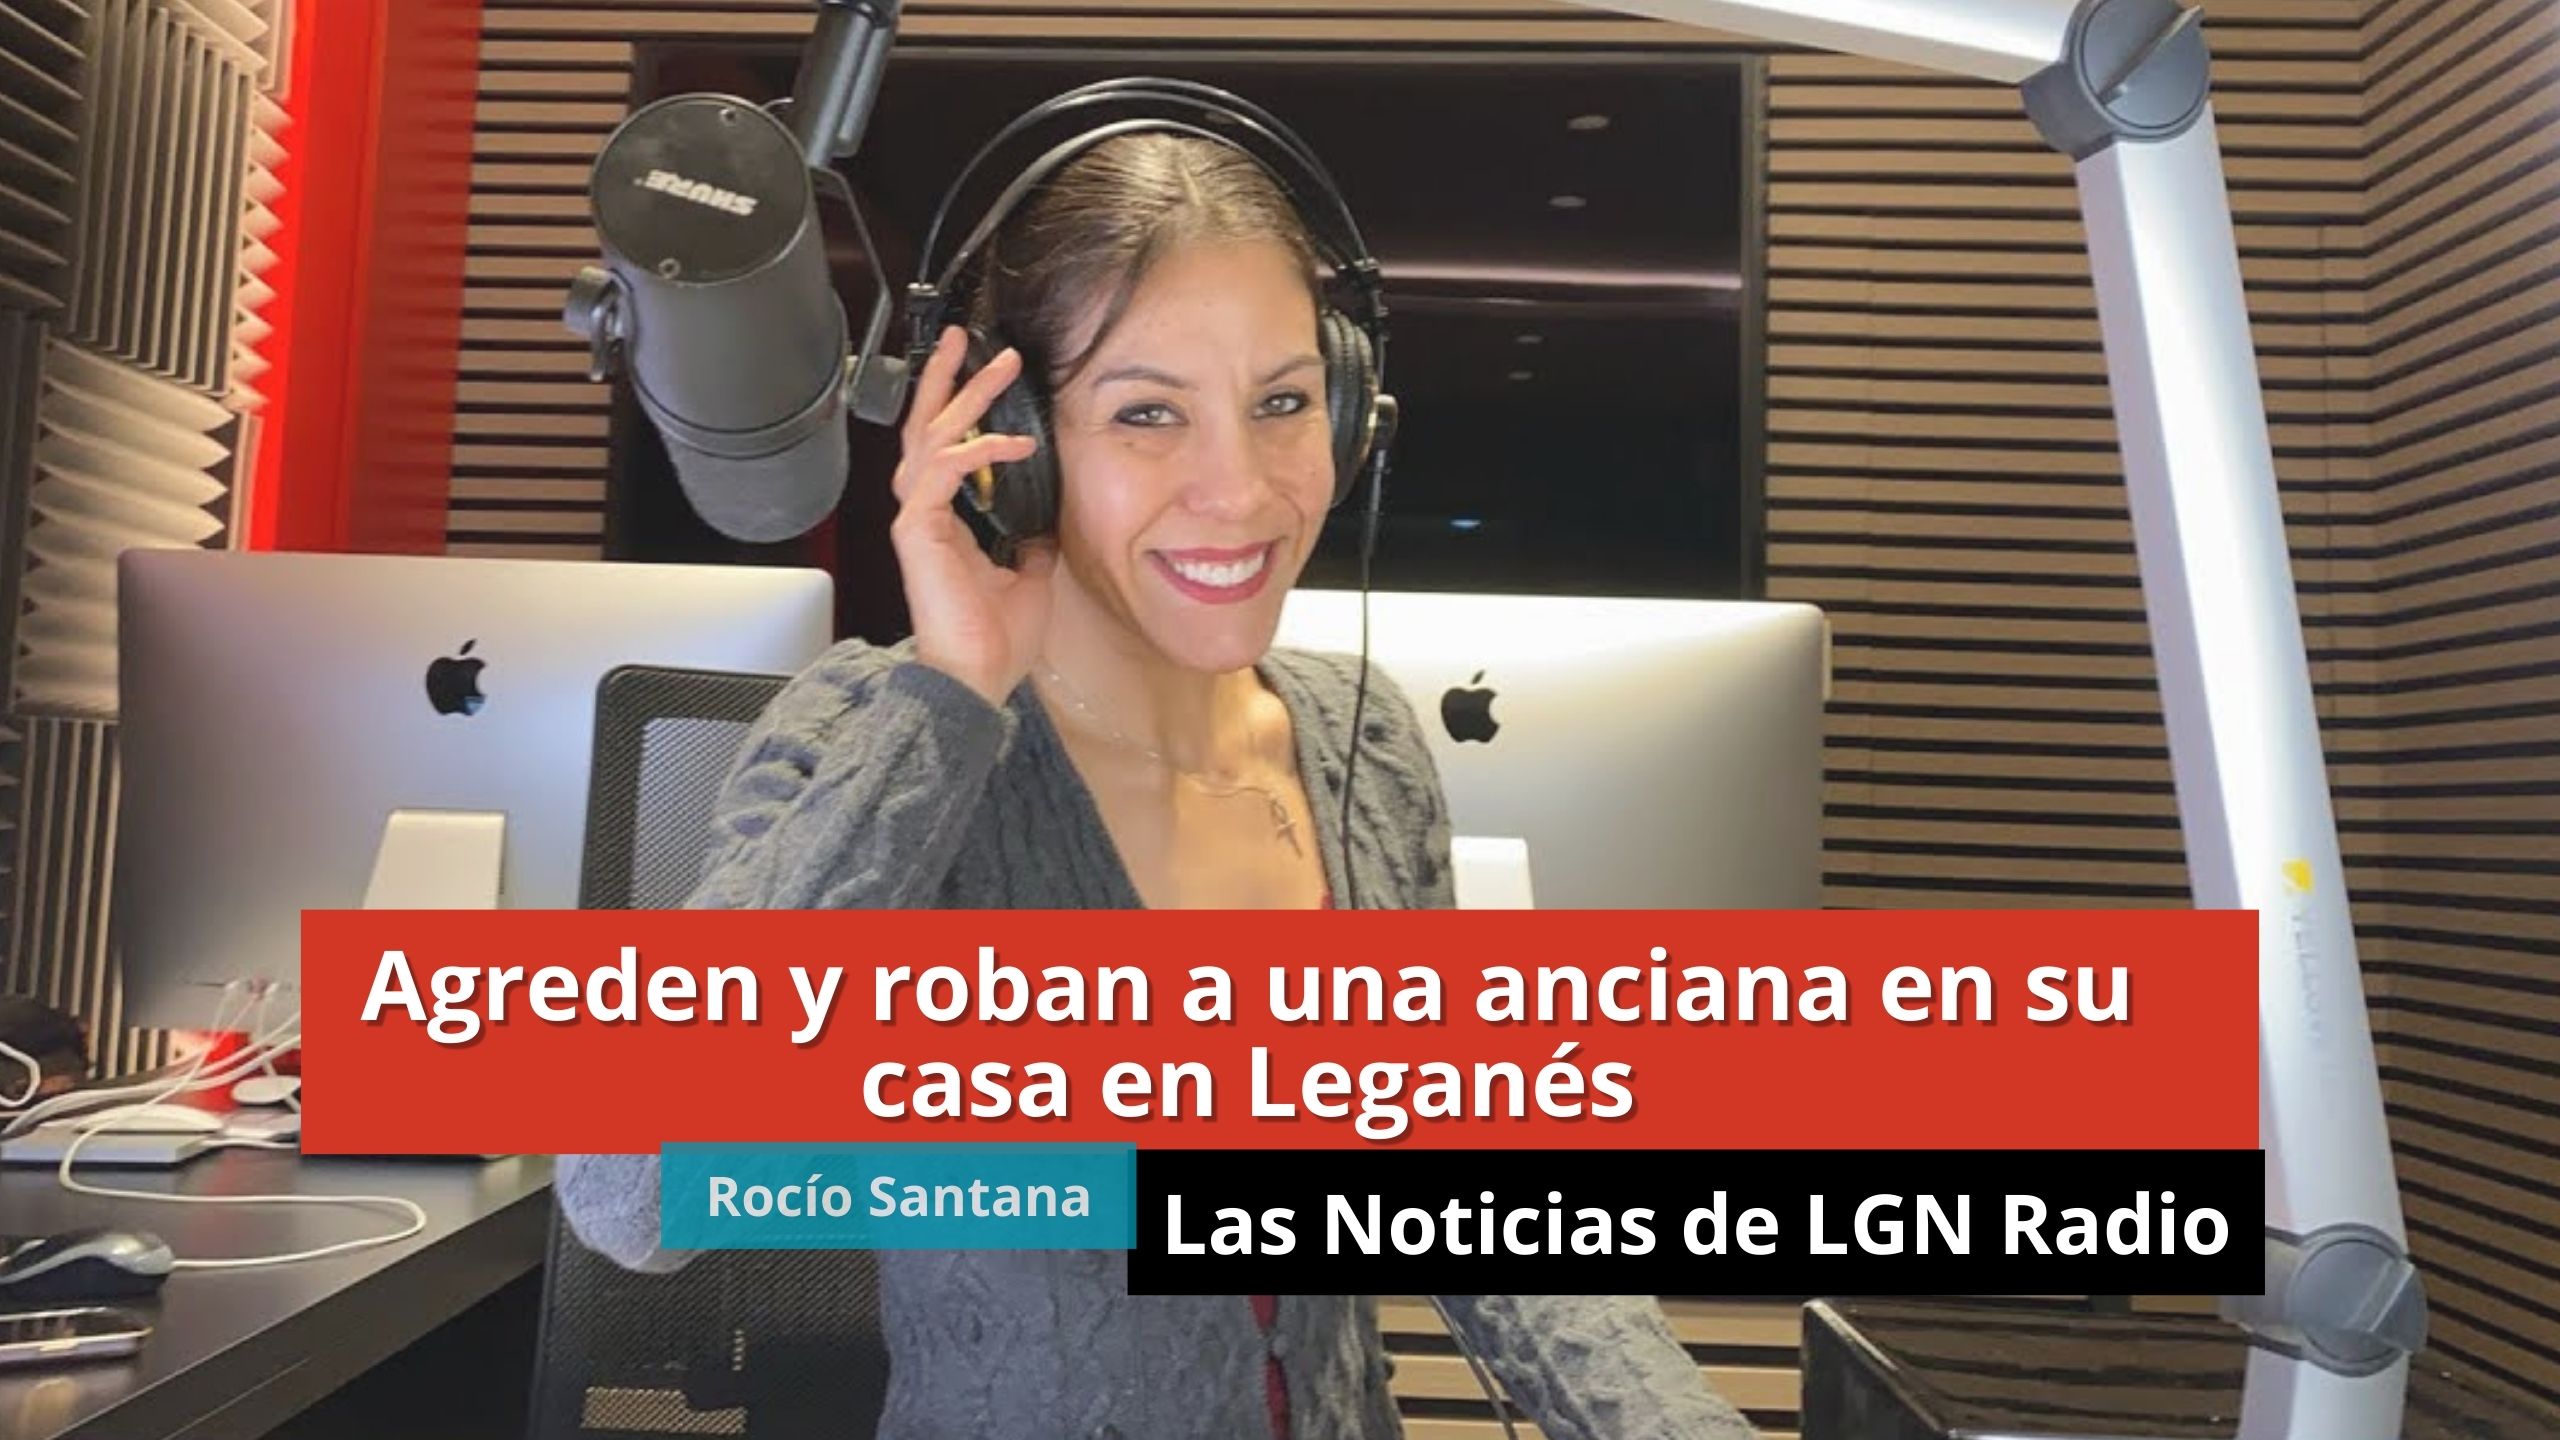 18-01-24 Agreden y roban a una anciana en su casa en Leganés - Las Noticias de LGN Radio